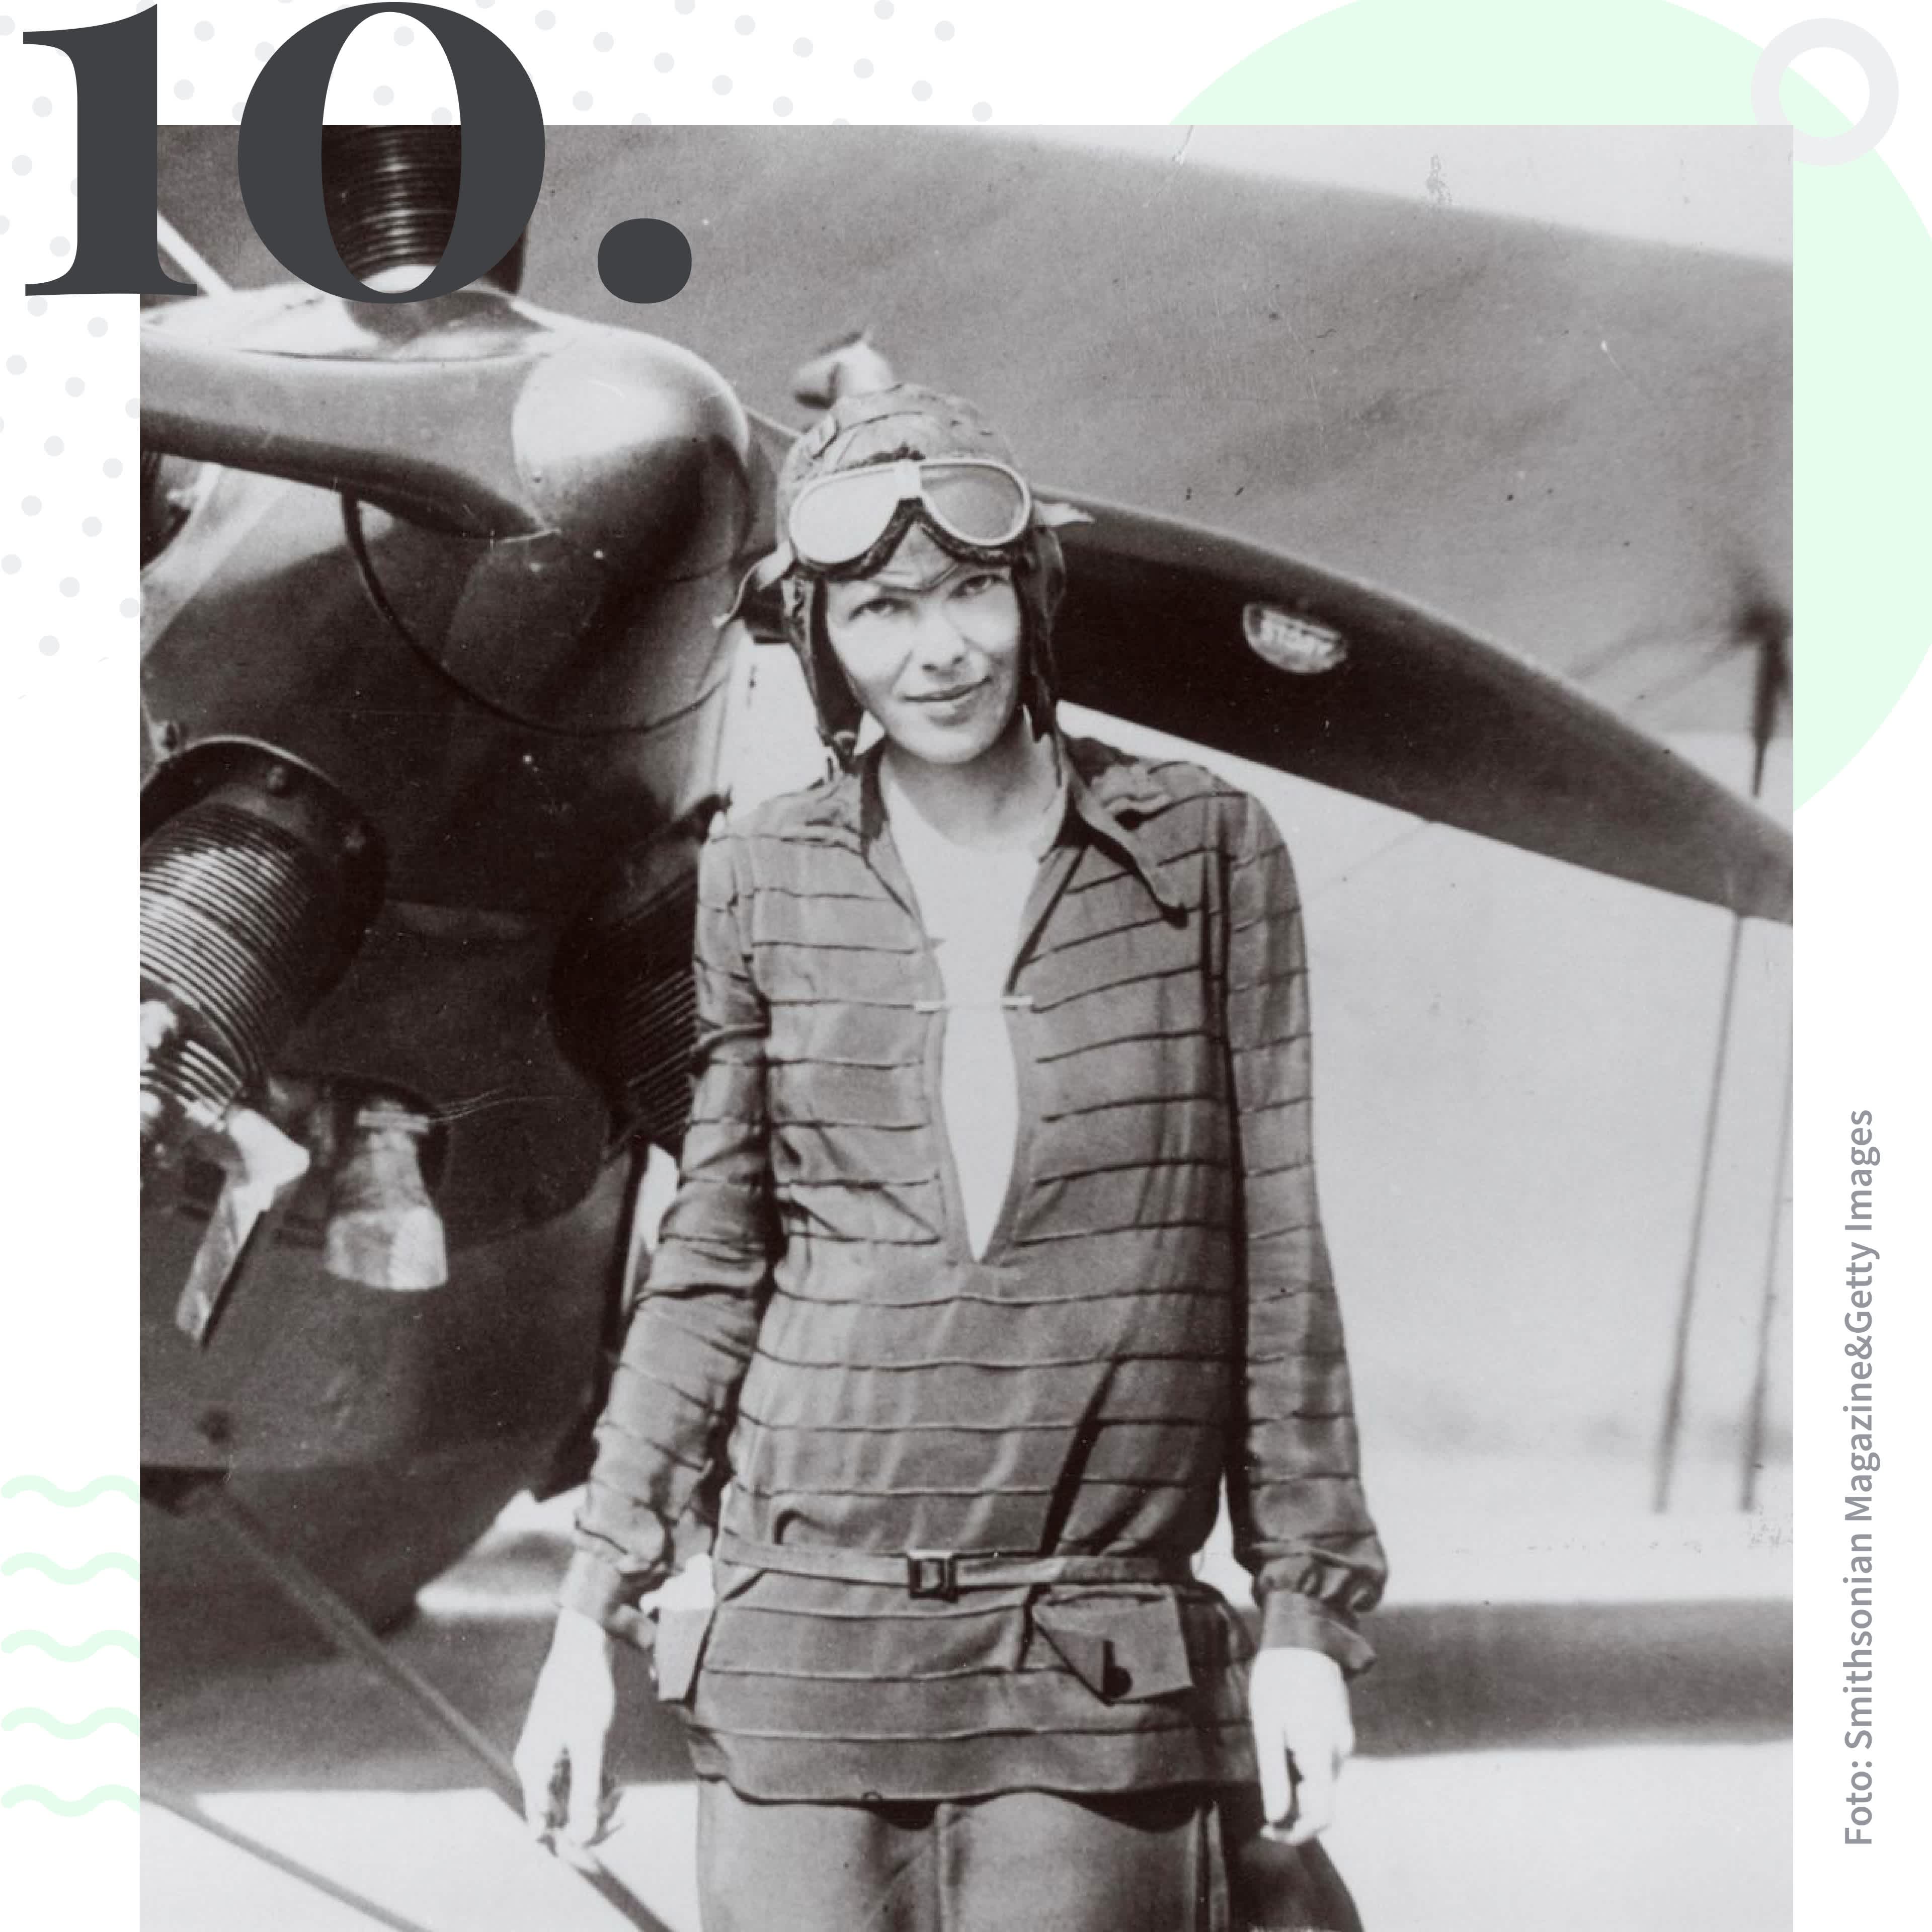 Amelia Earhart überquerte als erste Frau allein den Atlantik. Platz 10 im Tourlane Ranking der inspirierendsten Entdeckerinnen. 